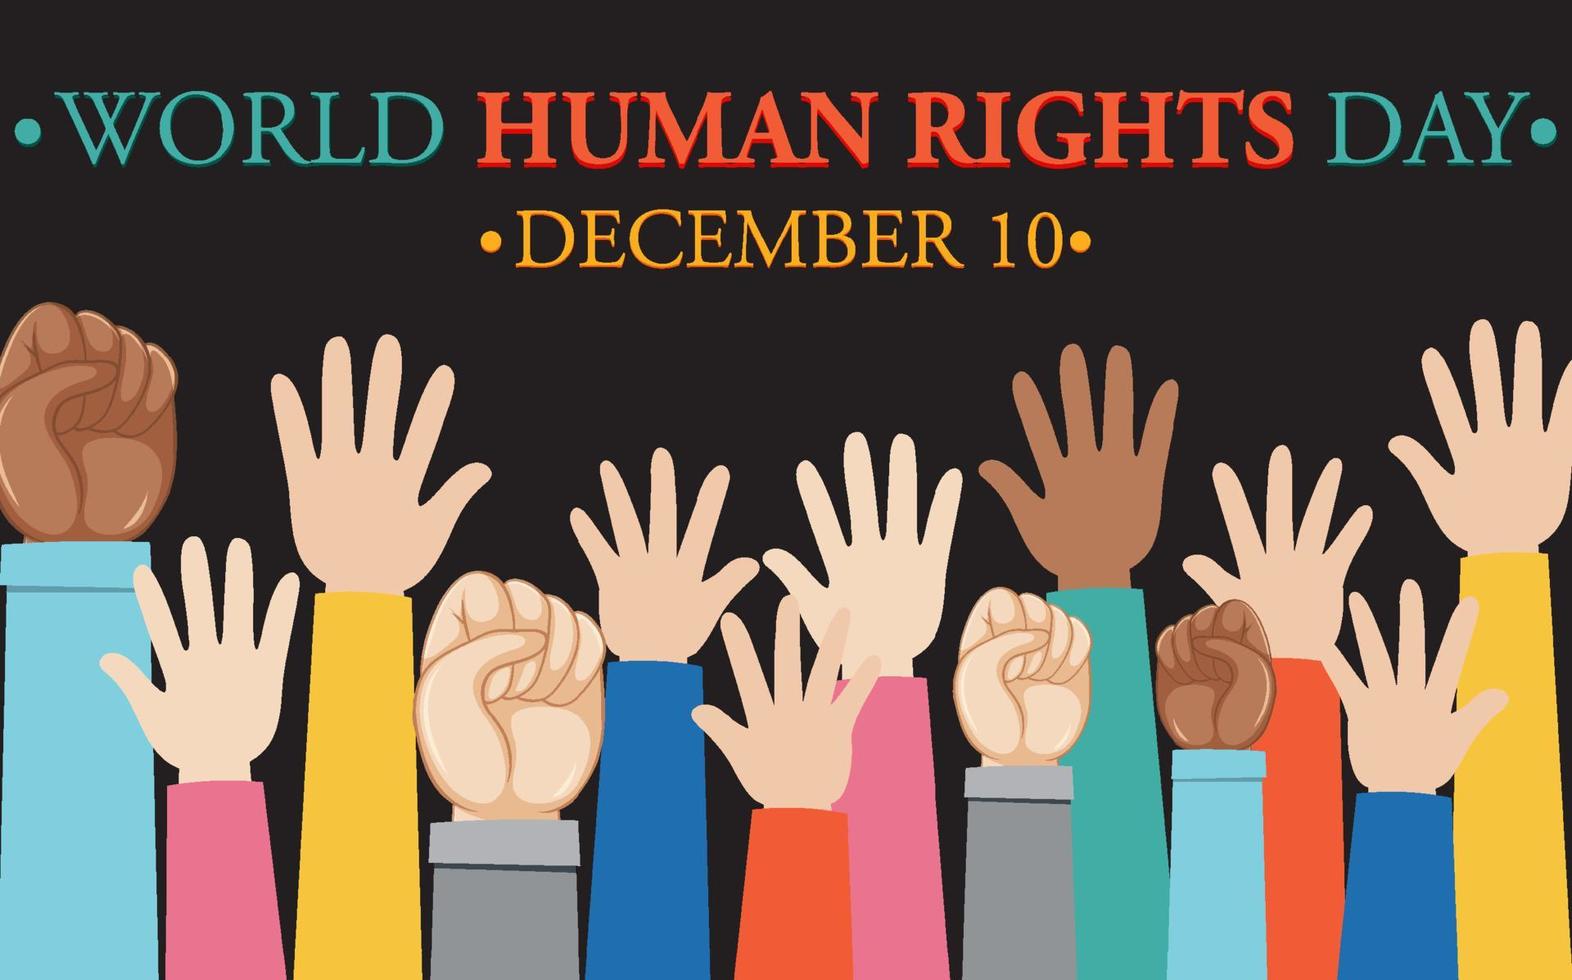 värld mänsklig rättigheter dag affisch design vektor